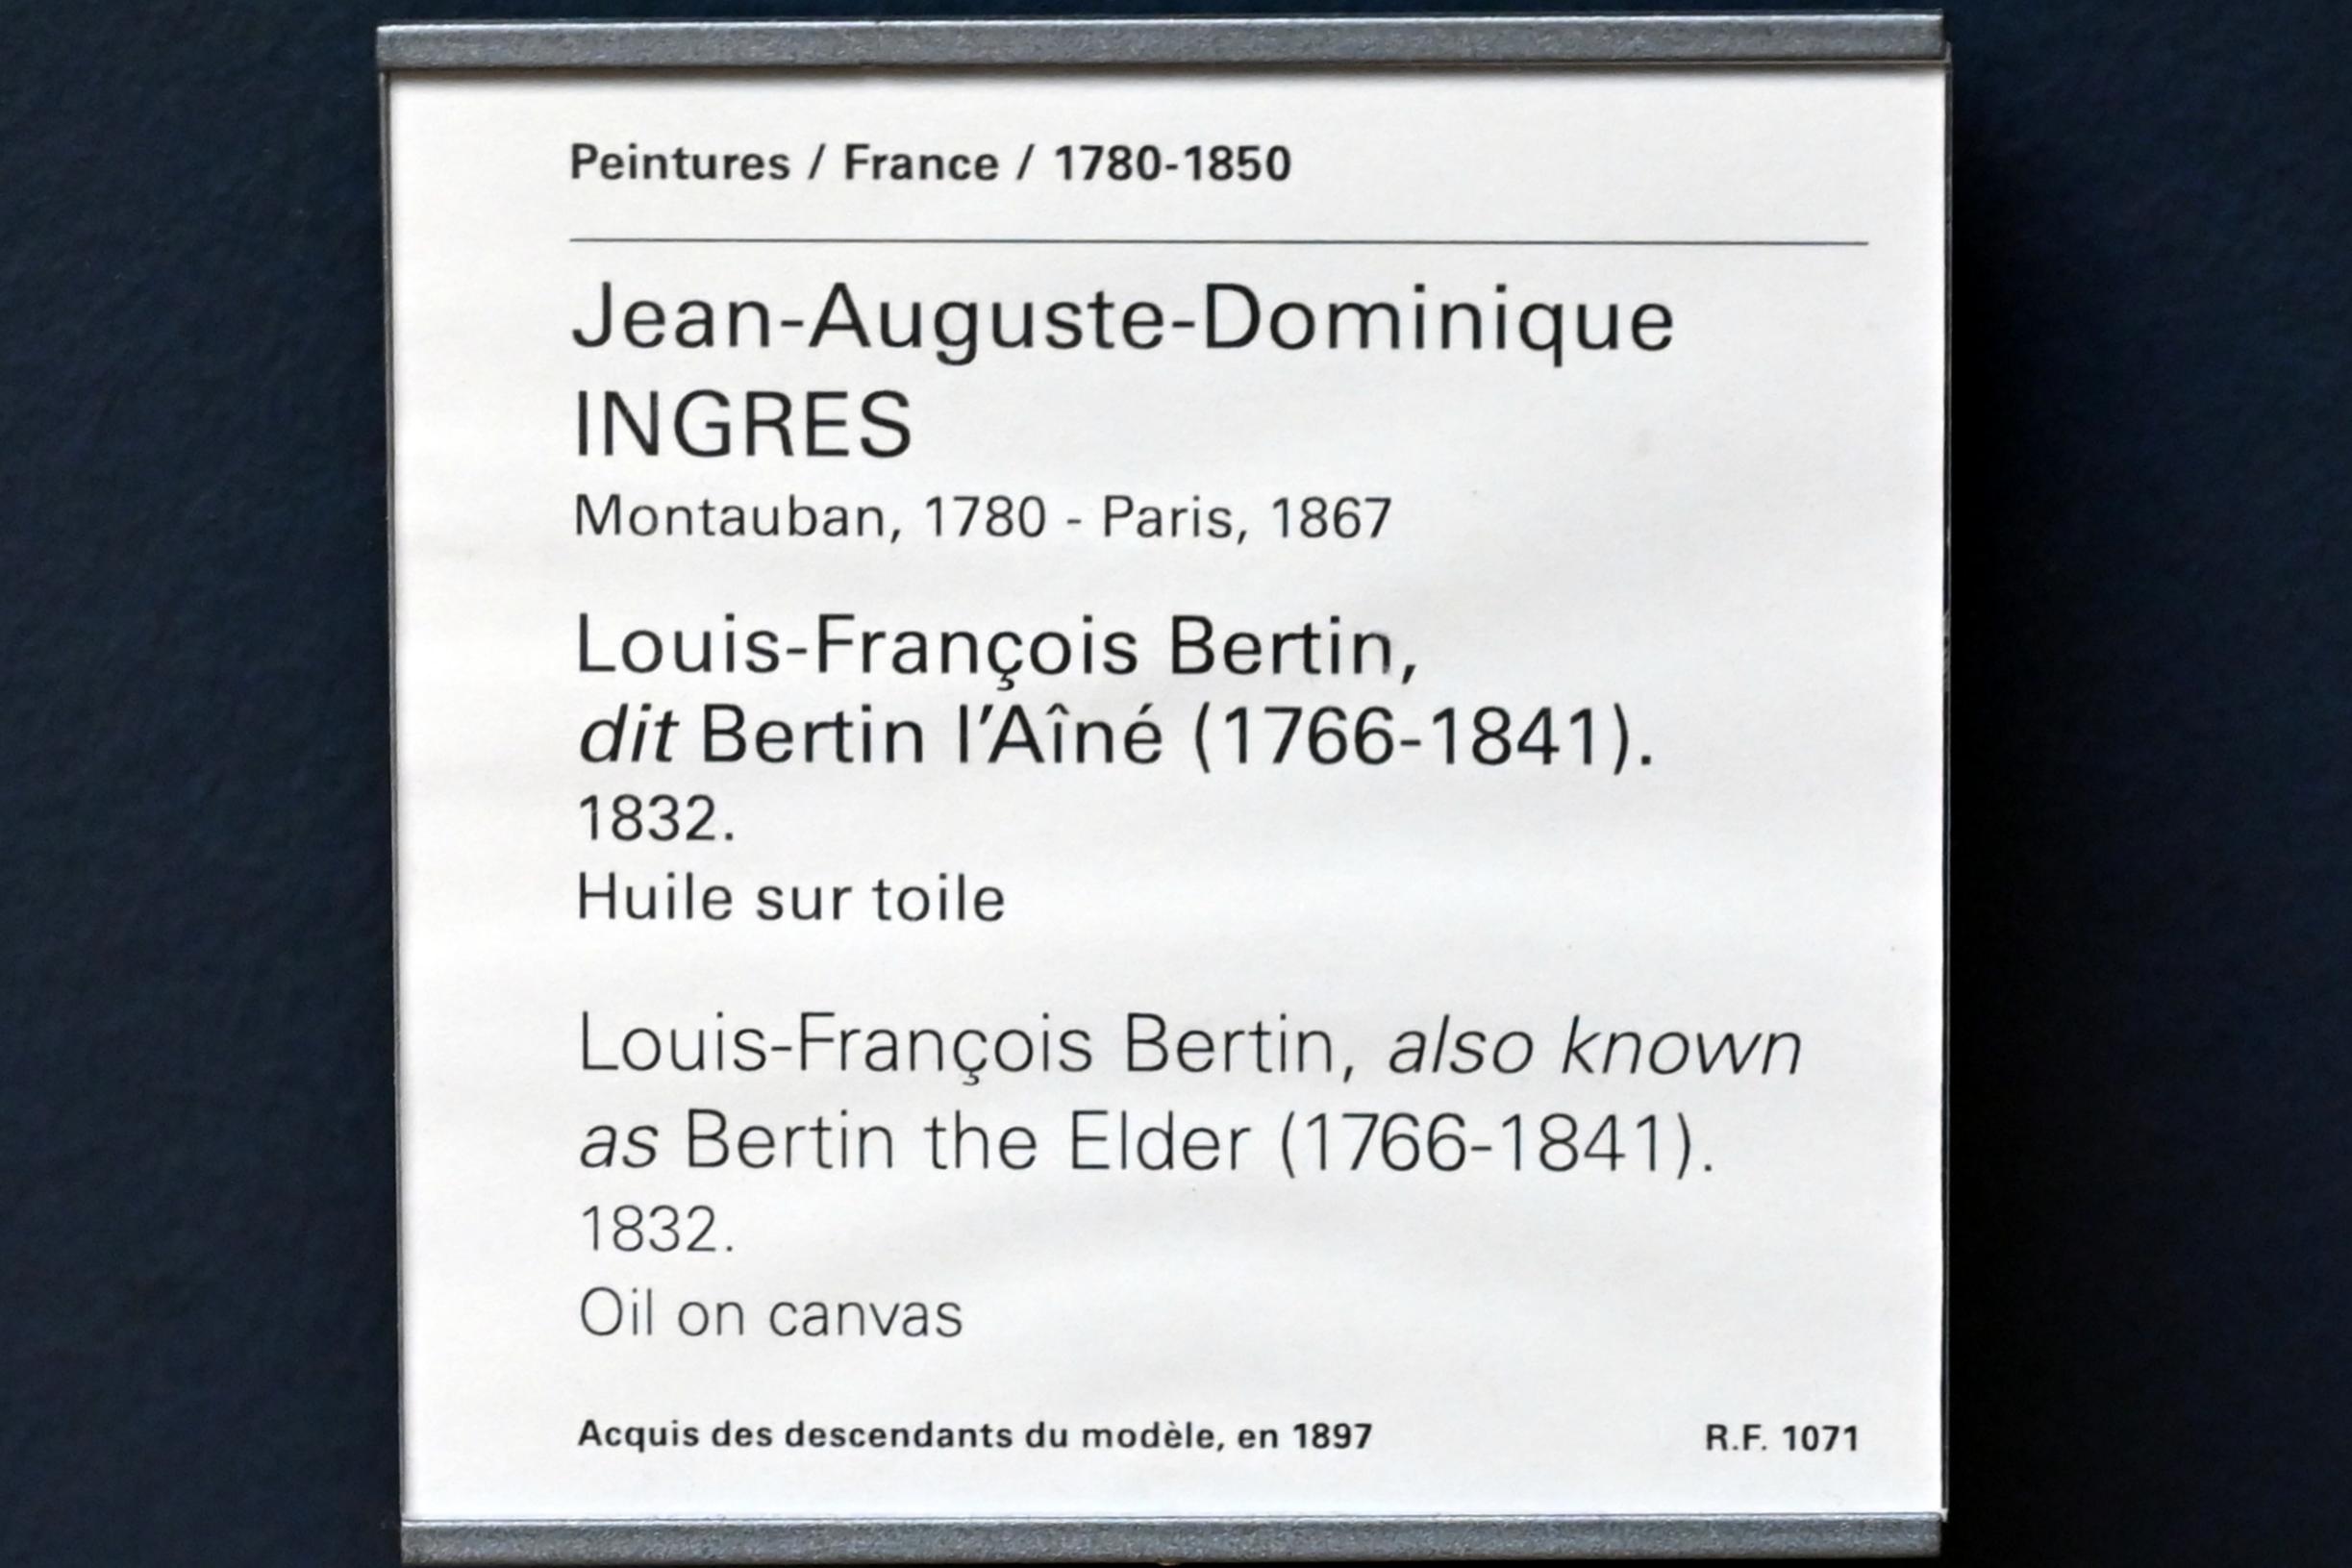 Jean-Auguste-Dominique Ingres (1805–1856), Porträt des Louis-François Bertin, bekannt als Bertin der Ältere (1766-1841), Paris, Musée du Louvre, Saal 940, 1832, Bild 2/2